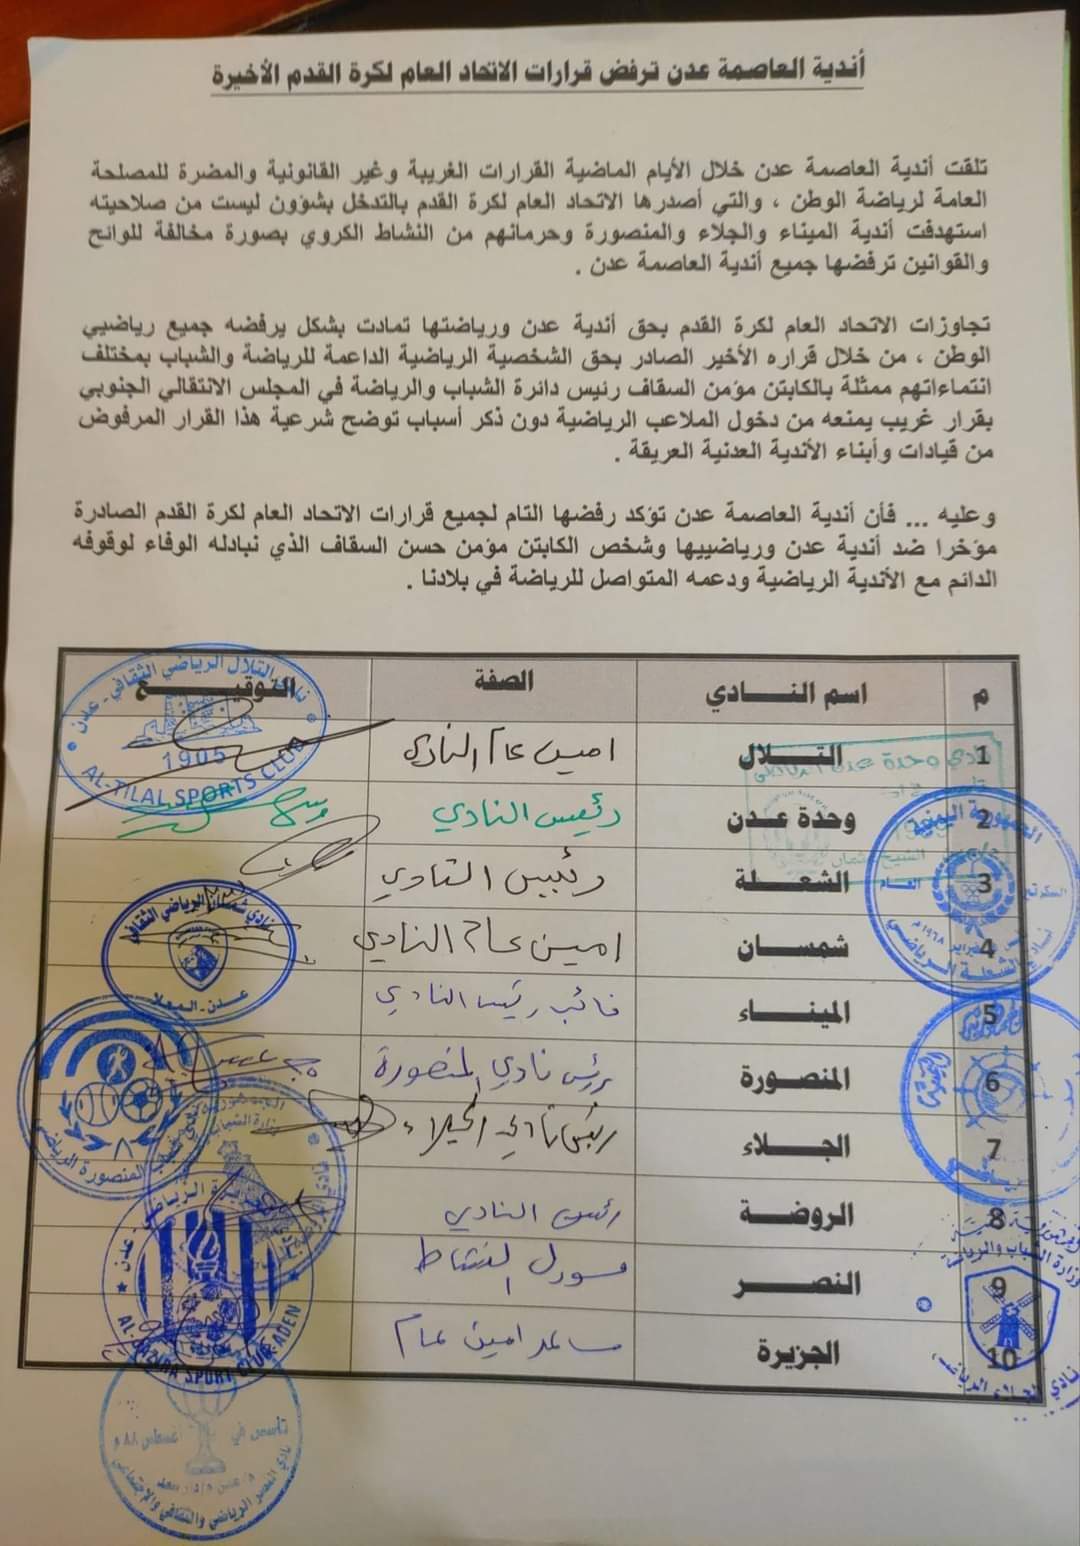 أندية العاصمة المؤقتة عدن ترفض قرارات الإتحاد العام لكرة القدم الاخيرة